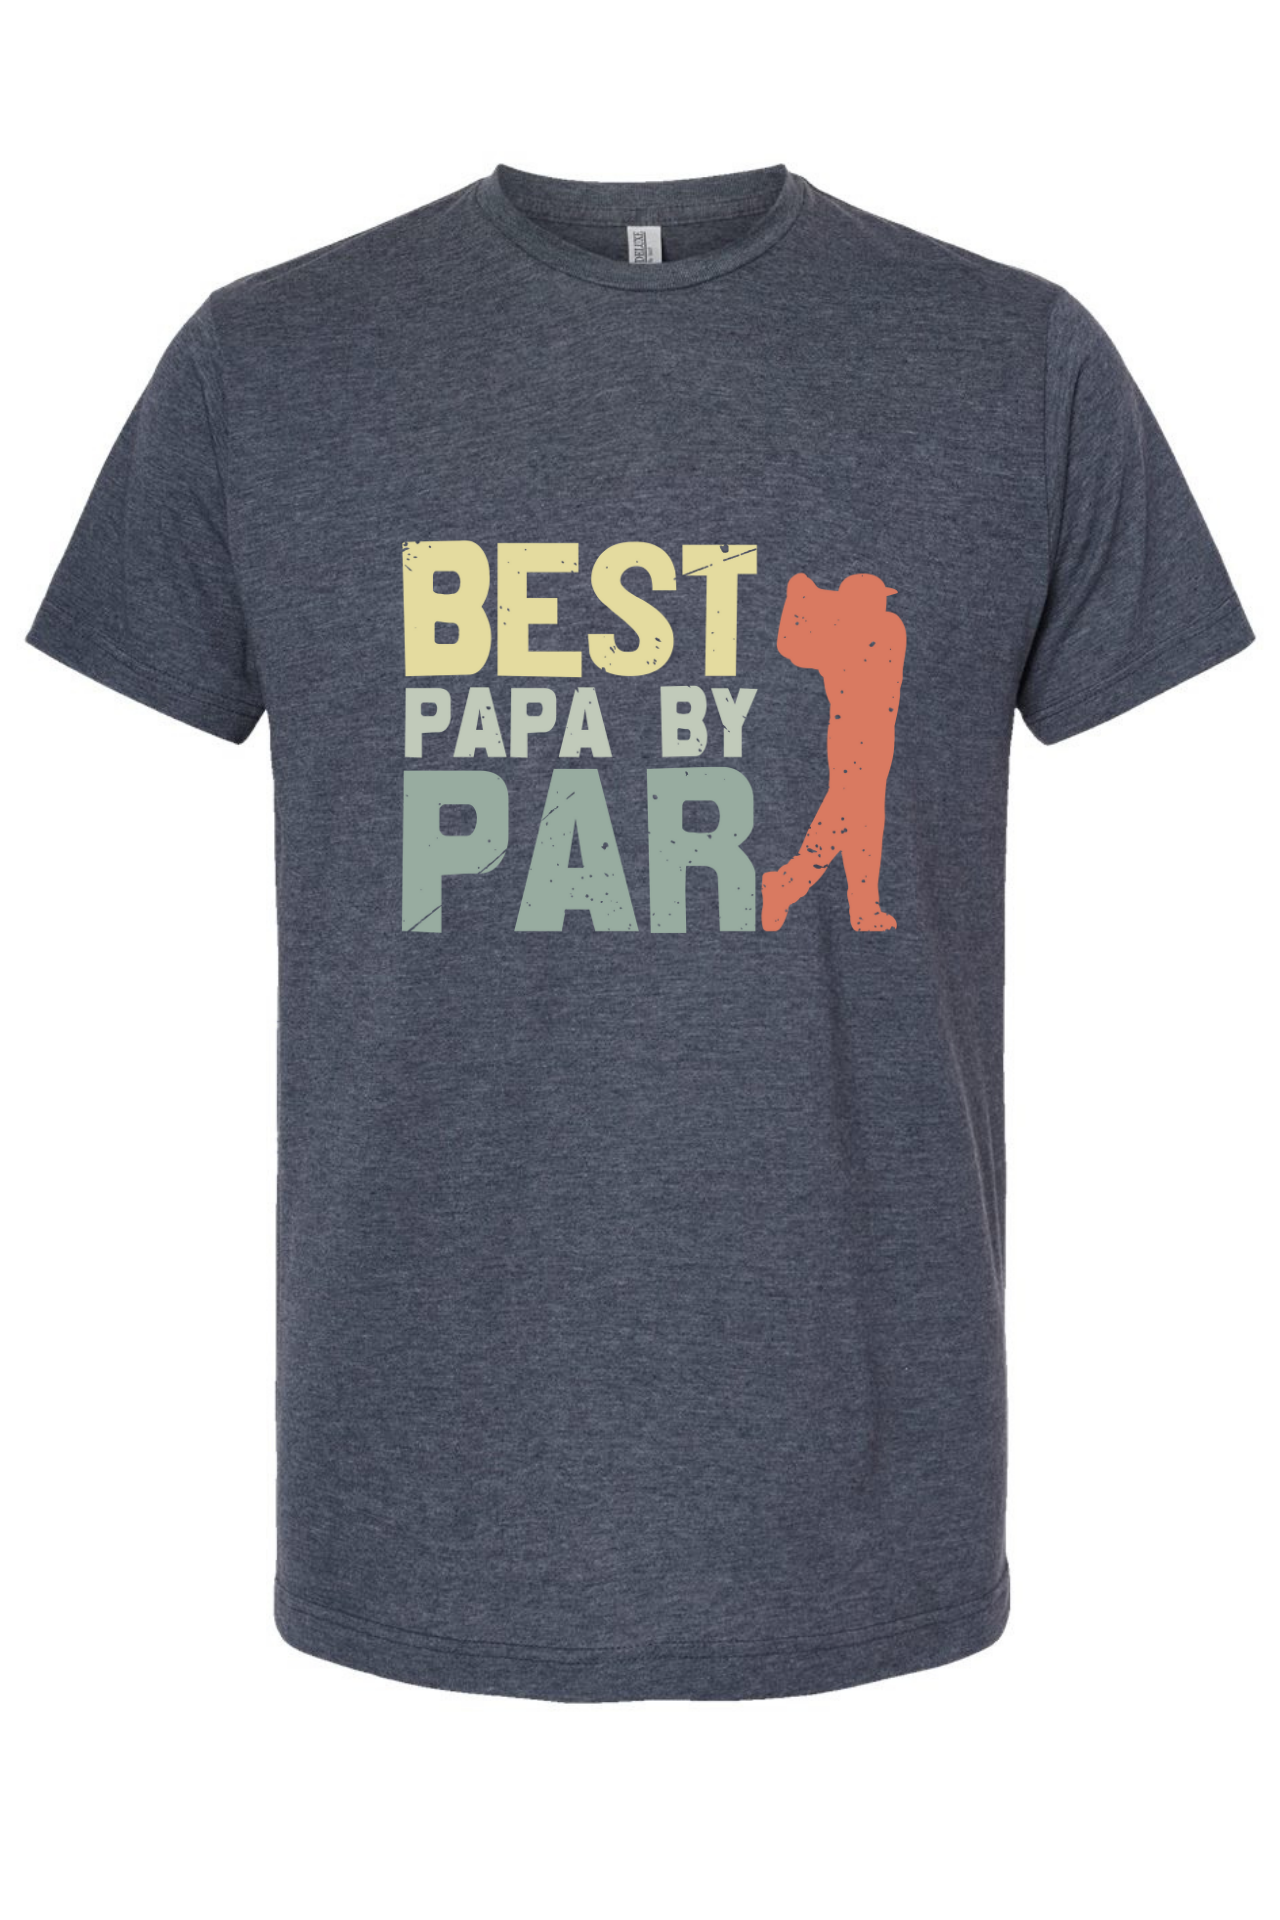 Best Papa by Par - deluxe cotton blend tee